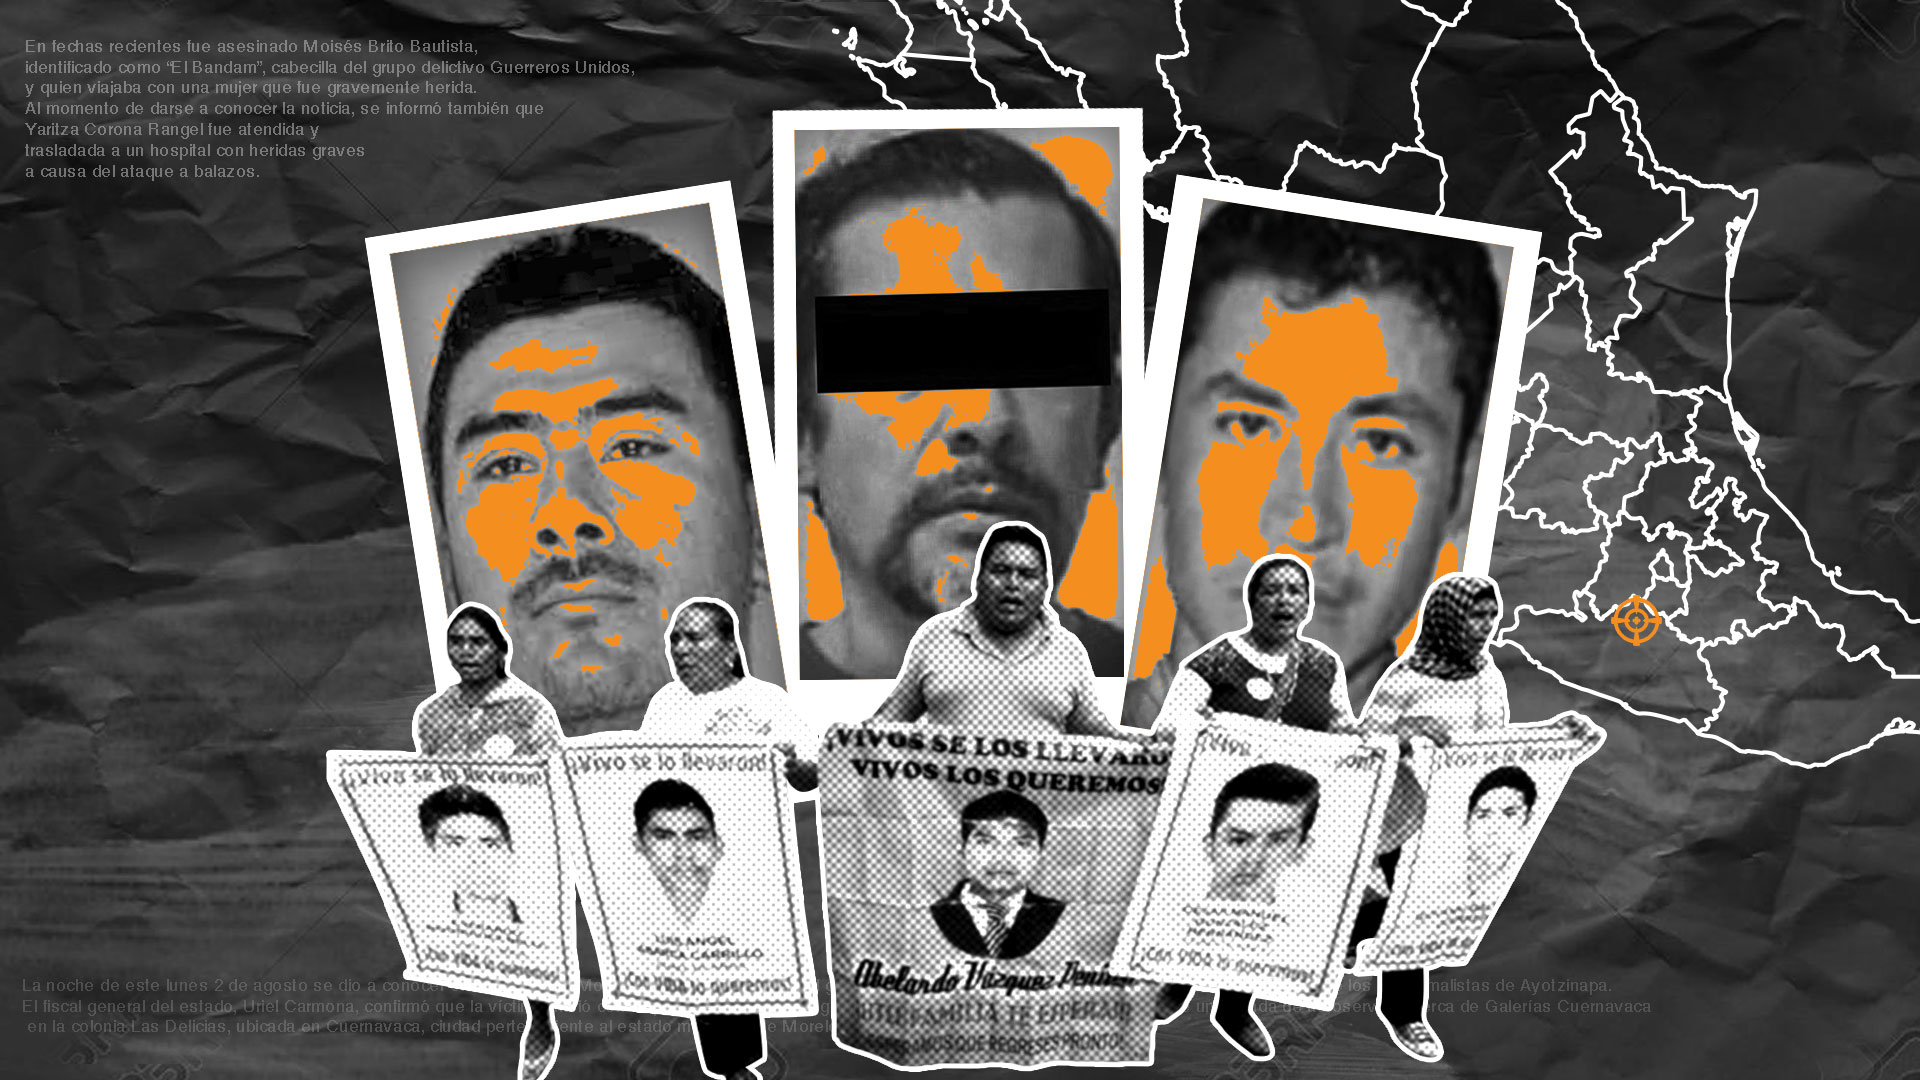 Guerreros Unidos fue identificado como el grupo que podría estar detrás del caso Ayotzinapa (Ilustración: Jovani Pérez Silva/Infobae México)